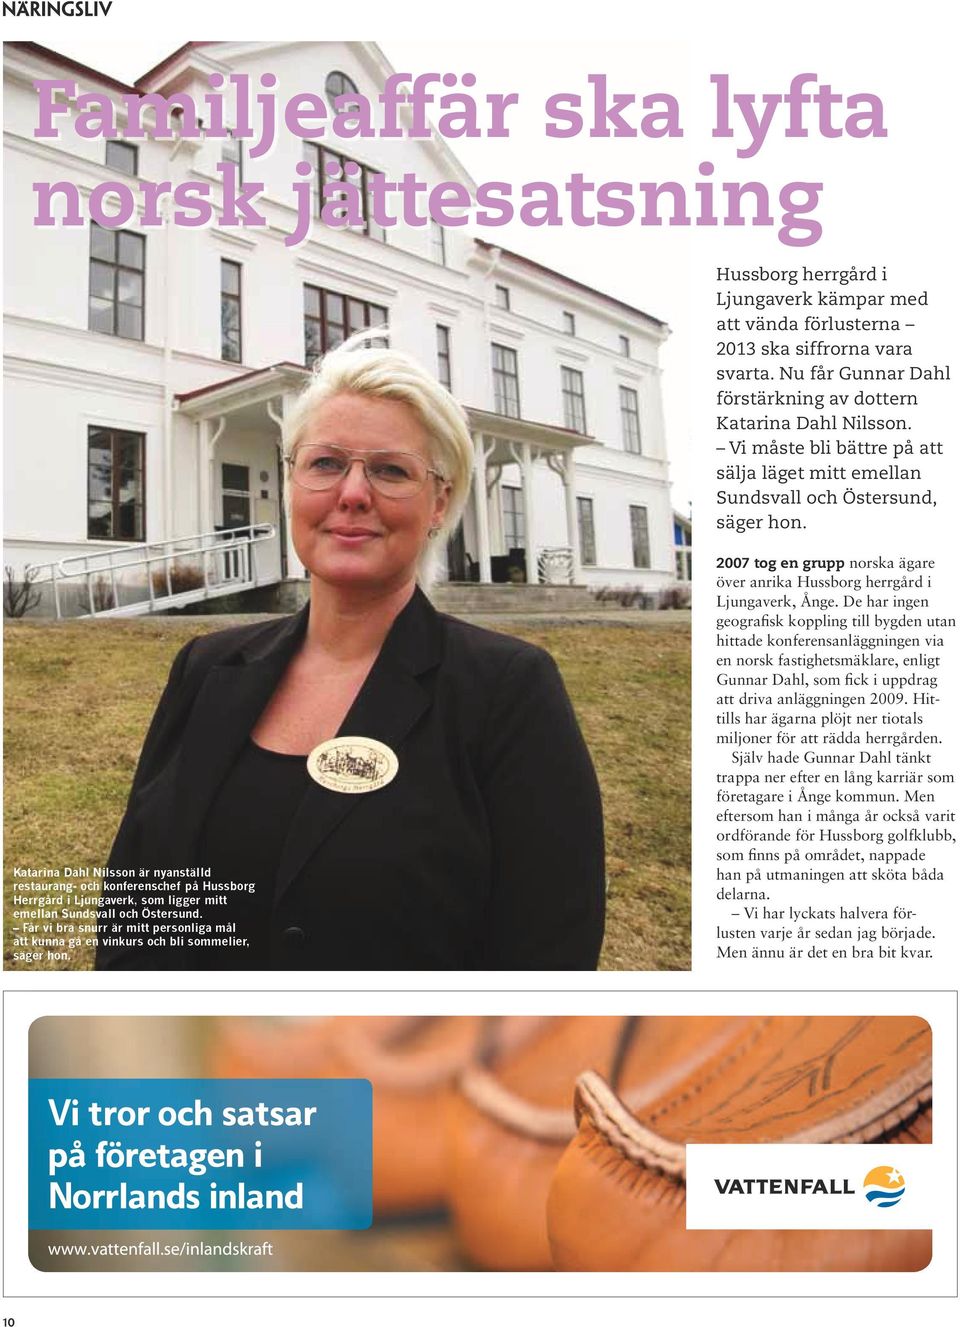 Katarina Dahl Nilsson är nyanställd restaurang- och konferenschef på Hussborg Herrgård i Ljungaverk, som ligger mitt emellan Sundsvall och Östersund.